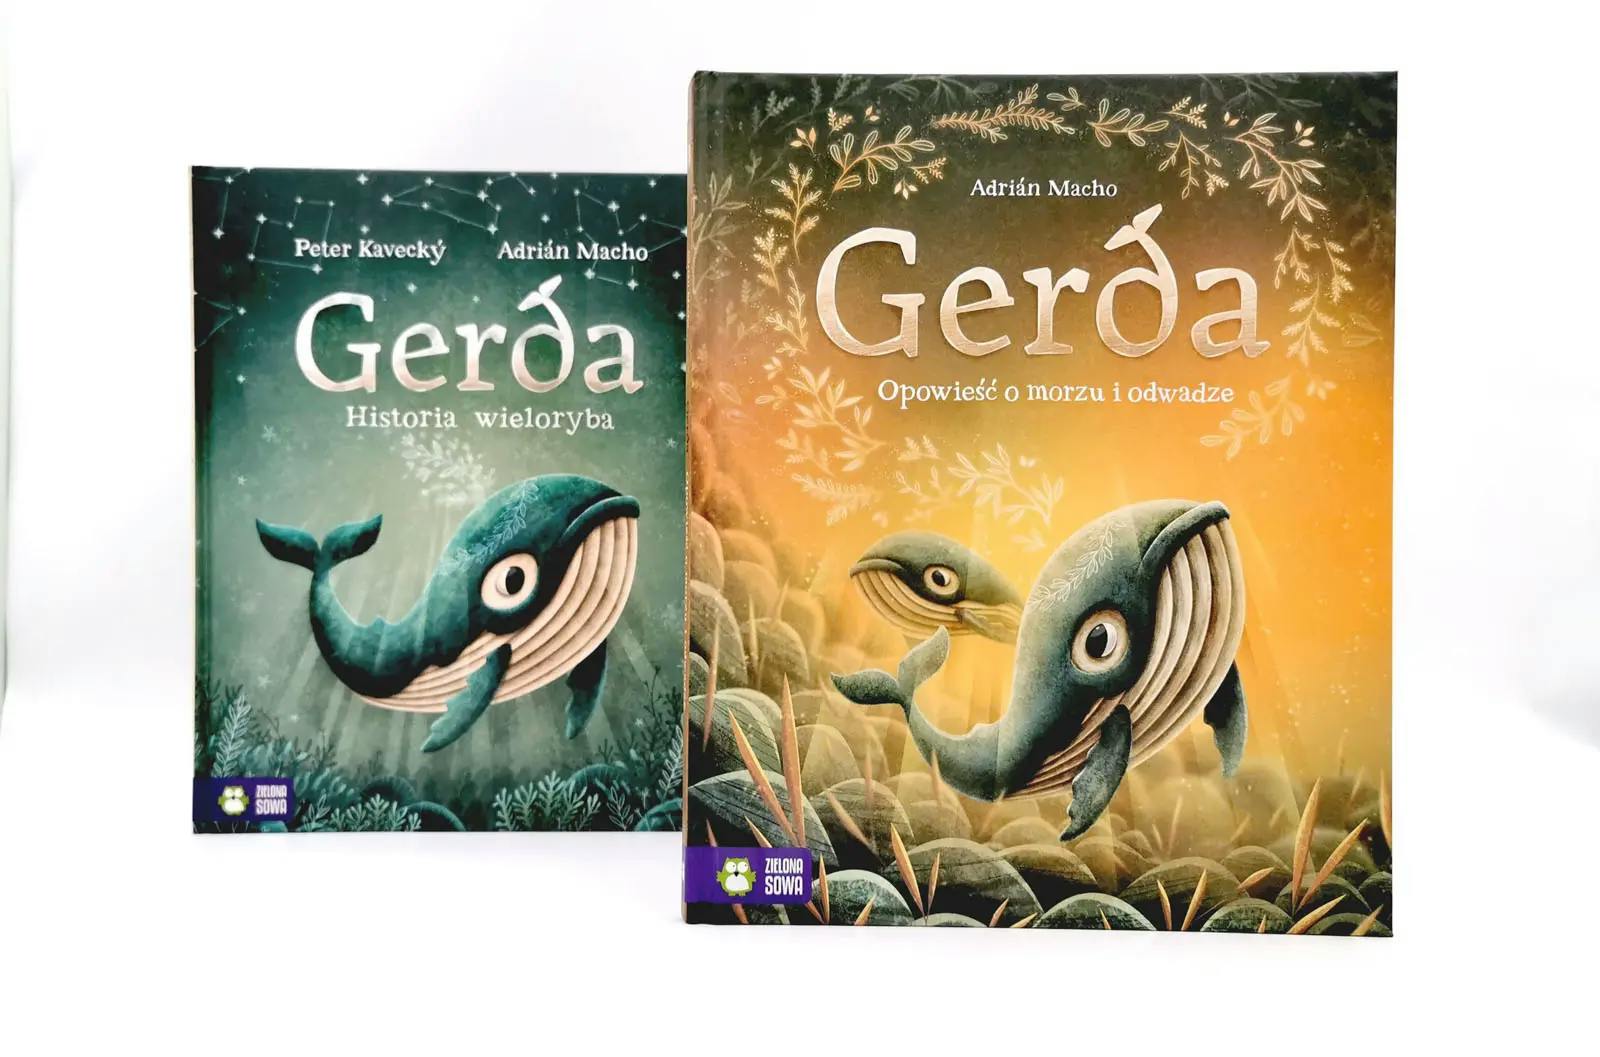 Gerda. Opowieść o morzu i odwadze – druga część przygód wielorybki